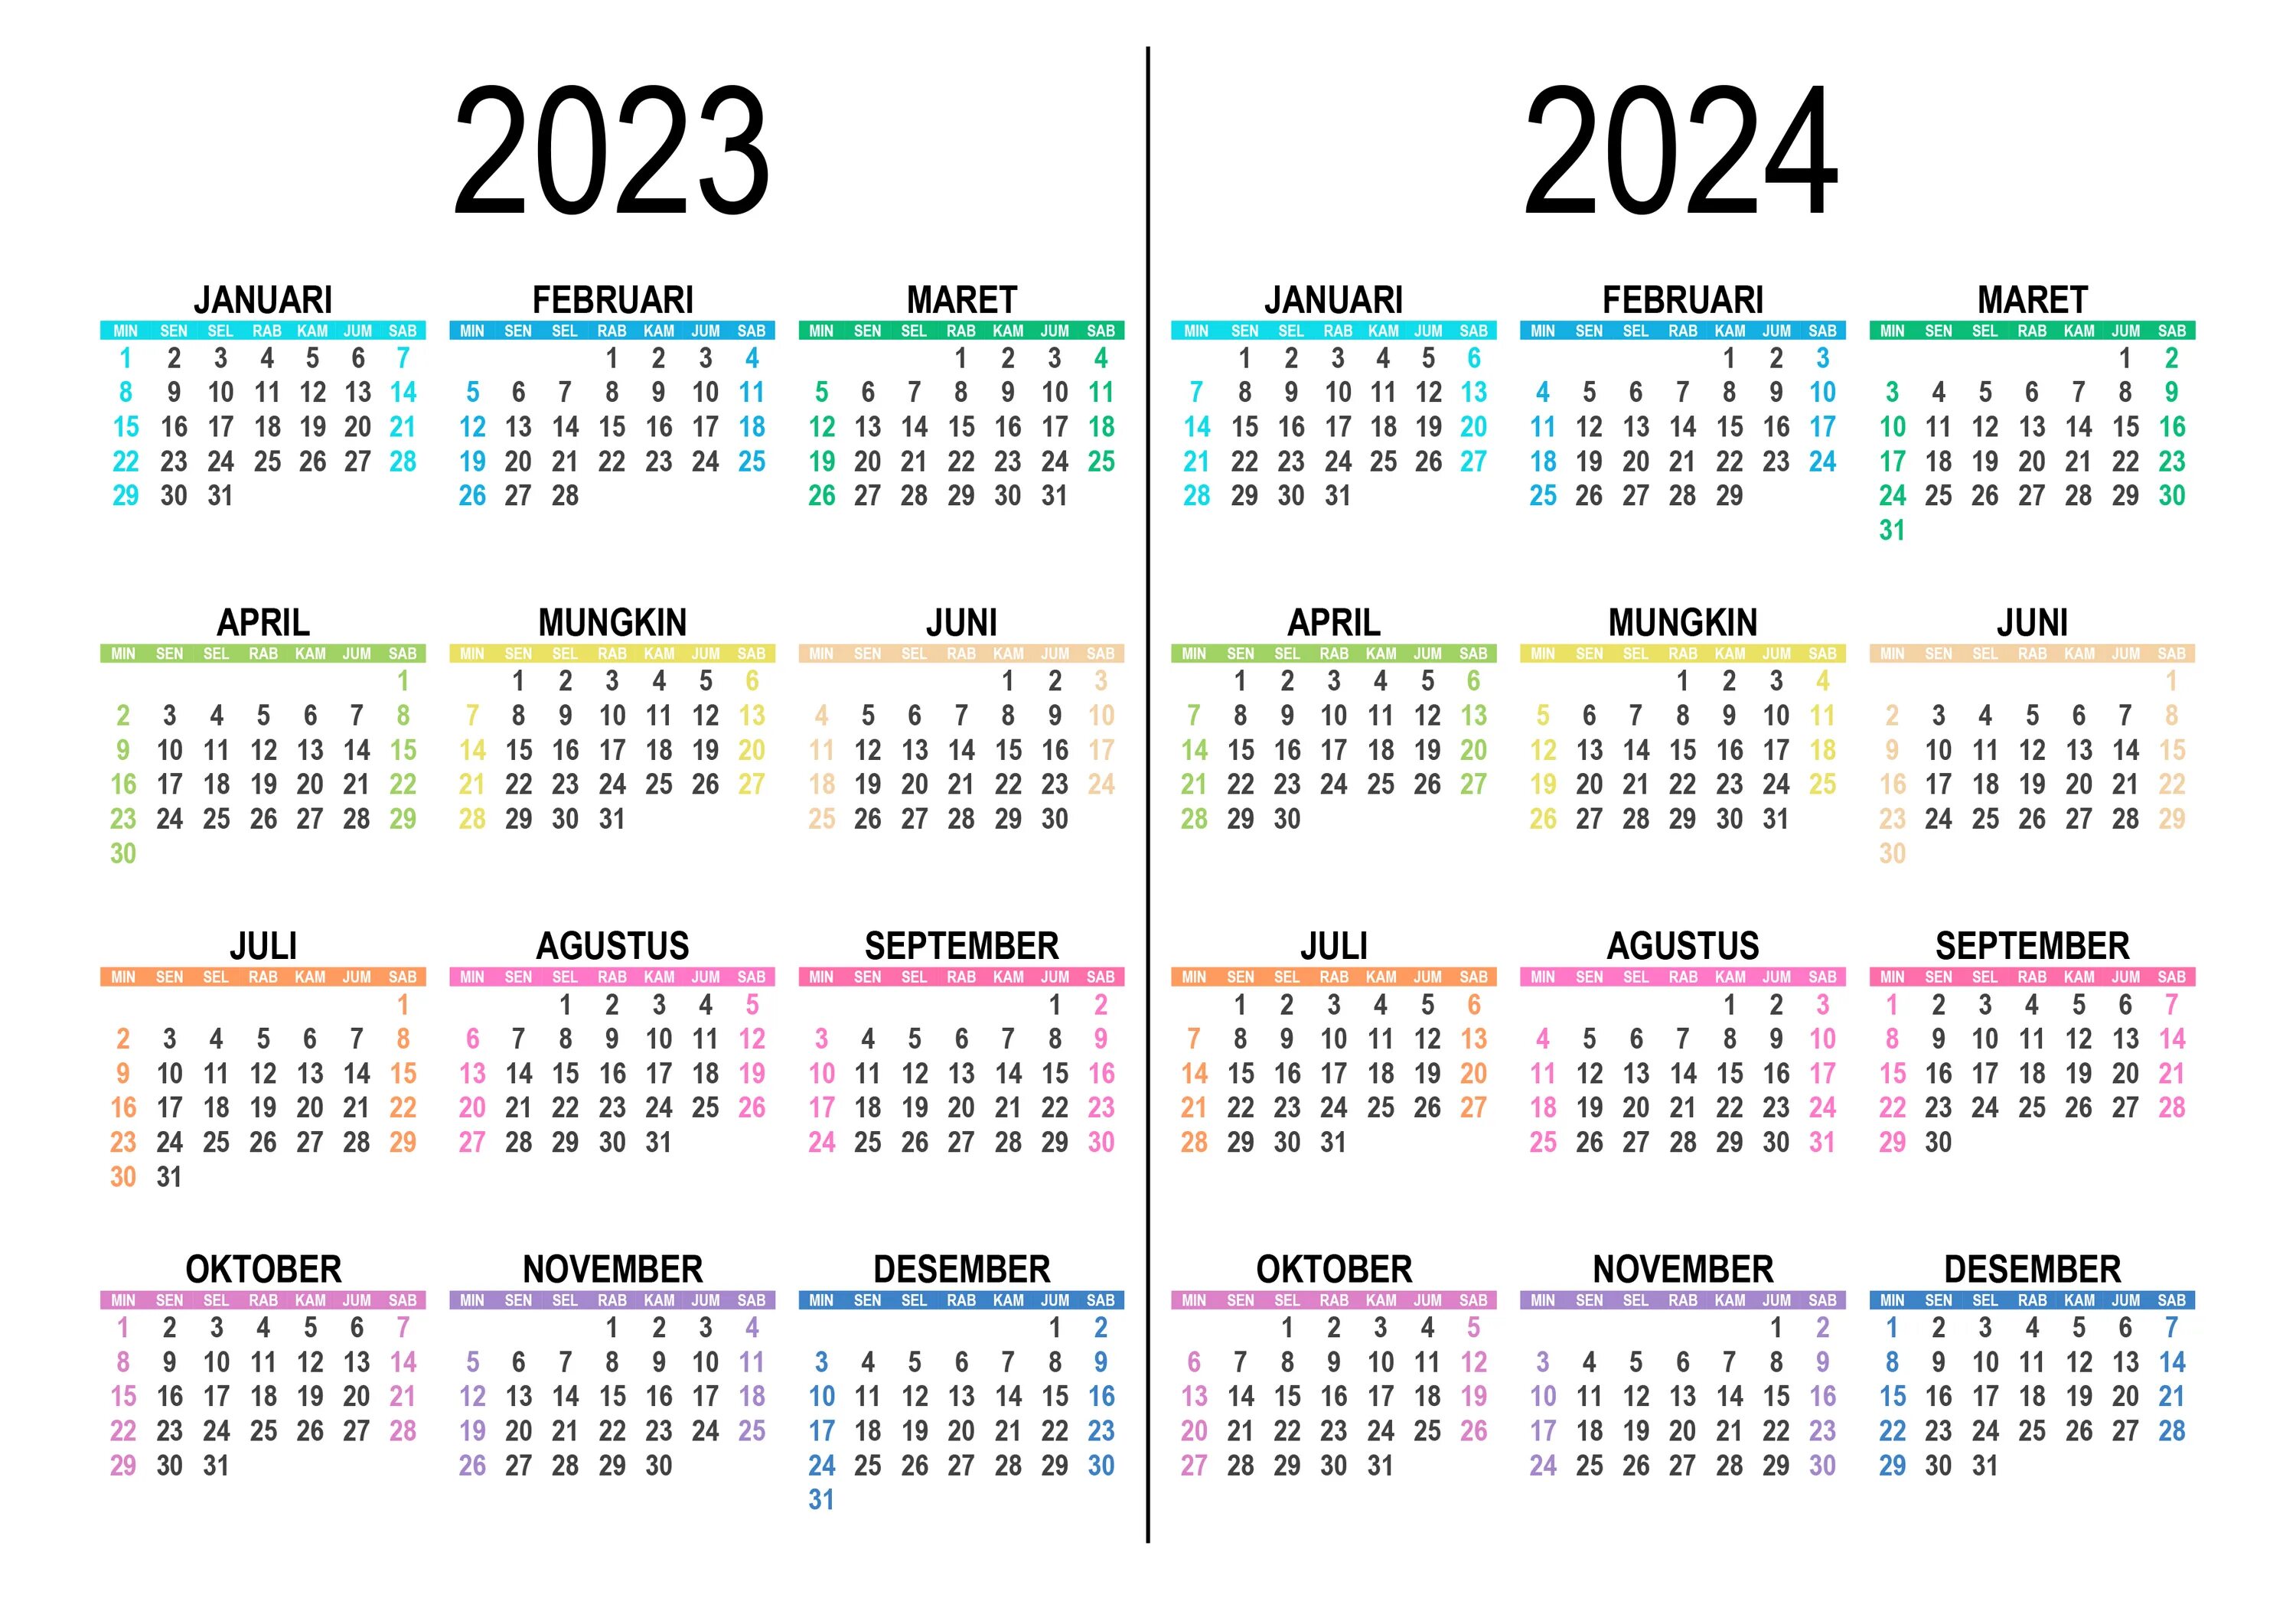 Праздничные даты 2024